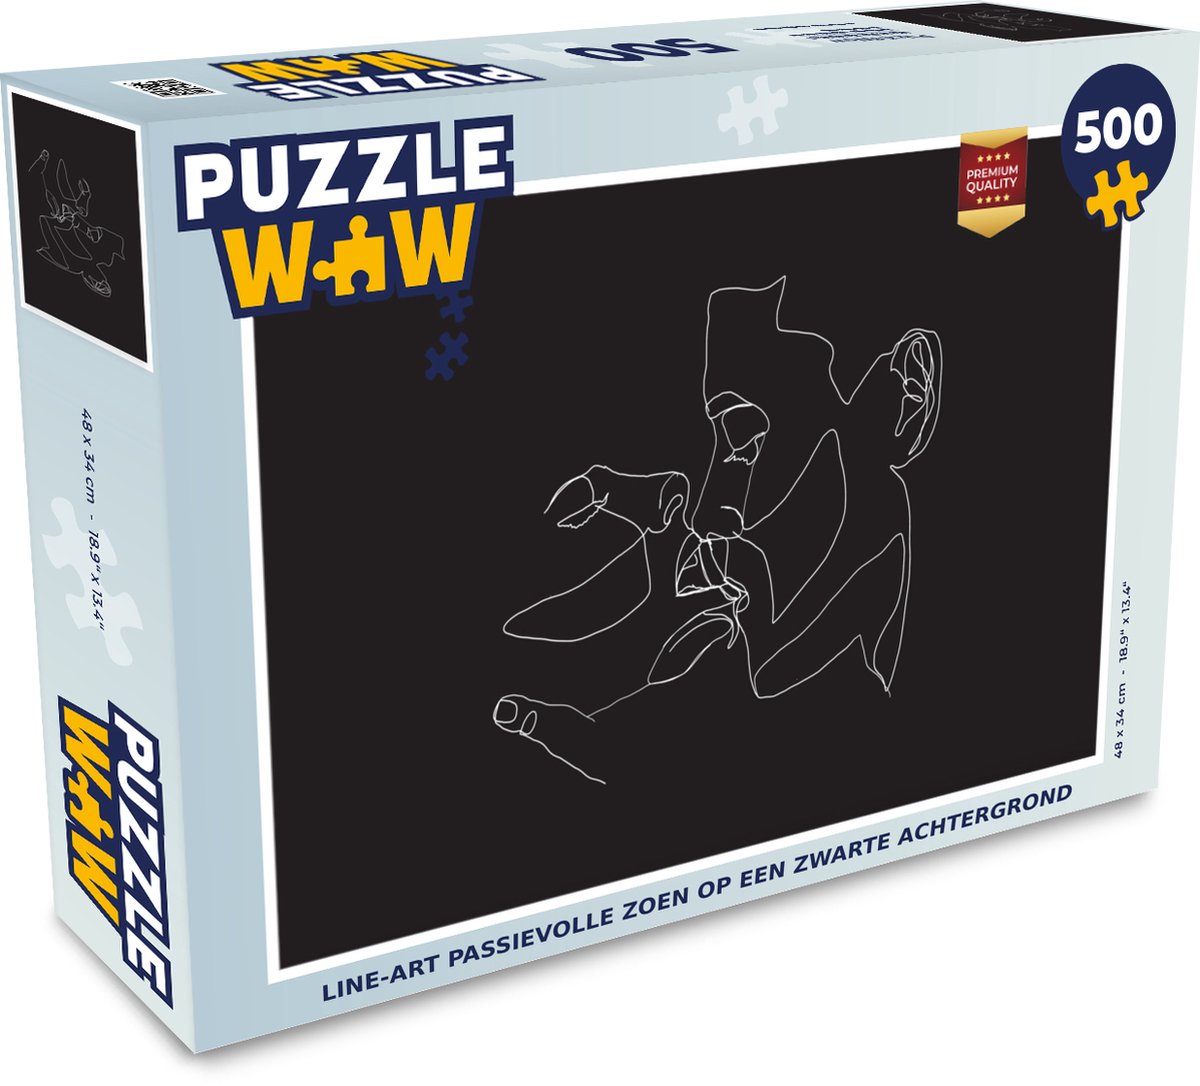 Afbeelding van product Puzzel 500 stukjes Line-art Koppel - 4 - Line-art passievolle zoen op een zwarte achtergrond - PuzzleWow heeft +100000 puzzels